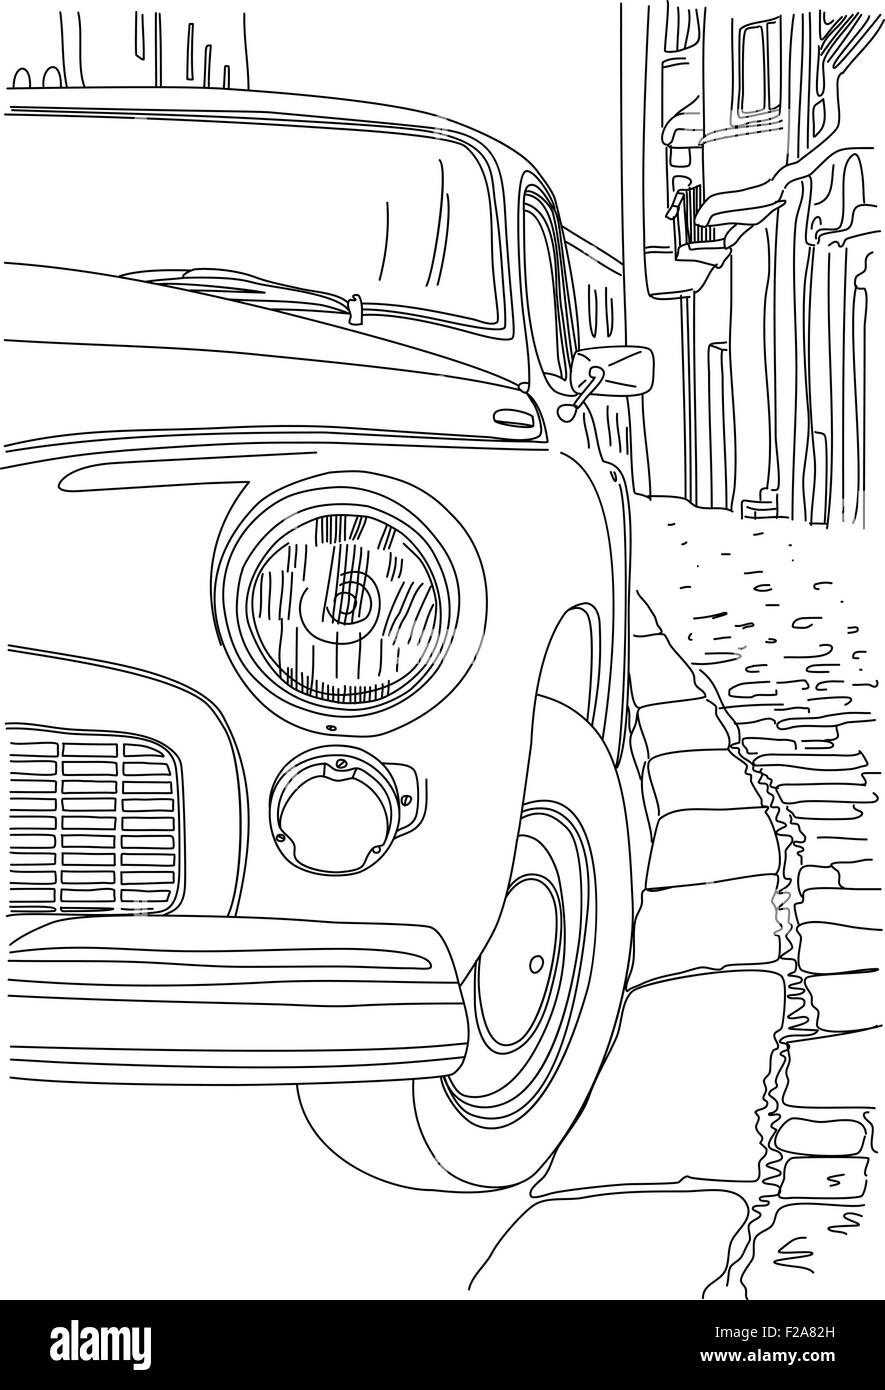 Eine Skizze der alten Autos in der Nähe der Bürgersteig geparkt Stock Vektor